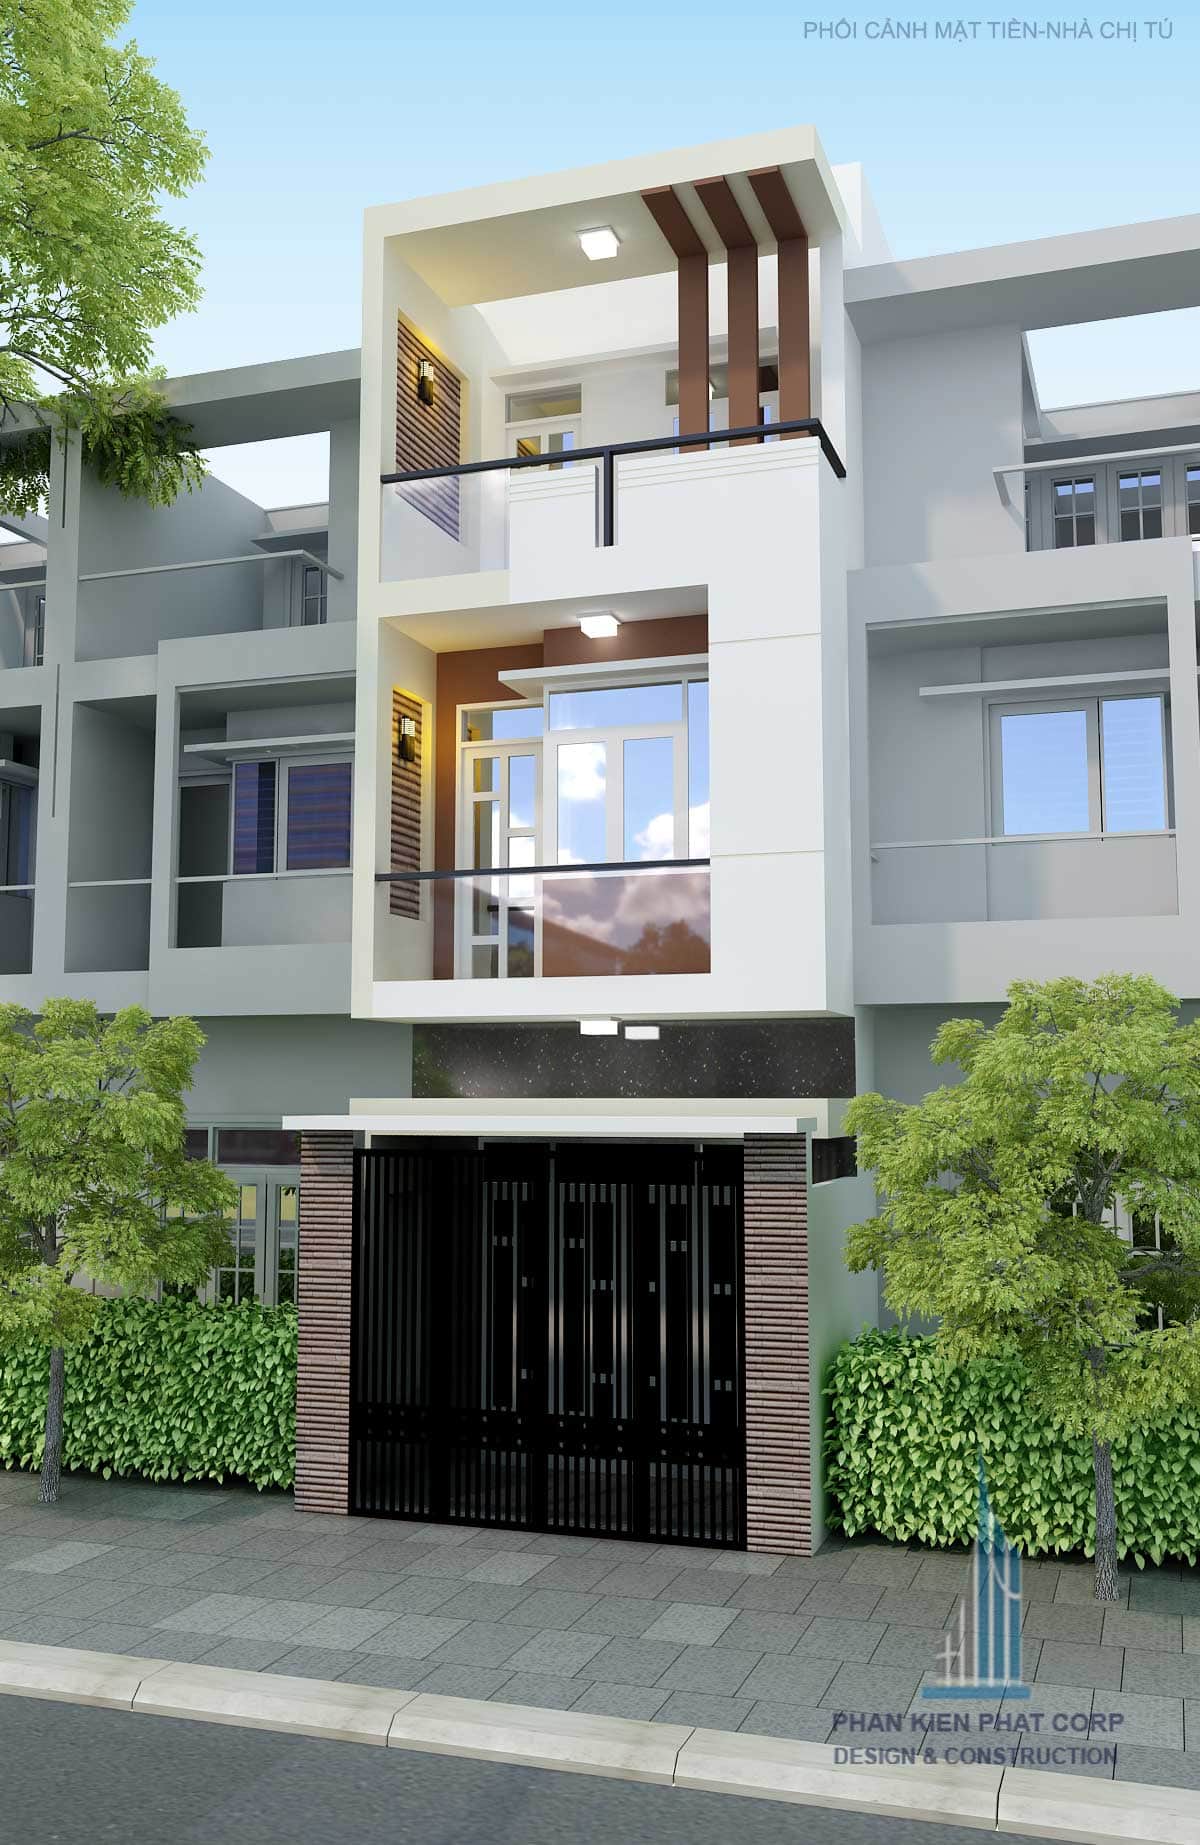 Mẫu nhà phố 3 tầng đẹp diện tích 4x12m tại Gò Vấp, Tp. HCM | Phan Kiến Phát Co.,Ltd